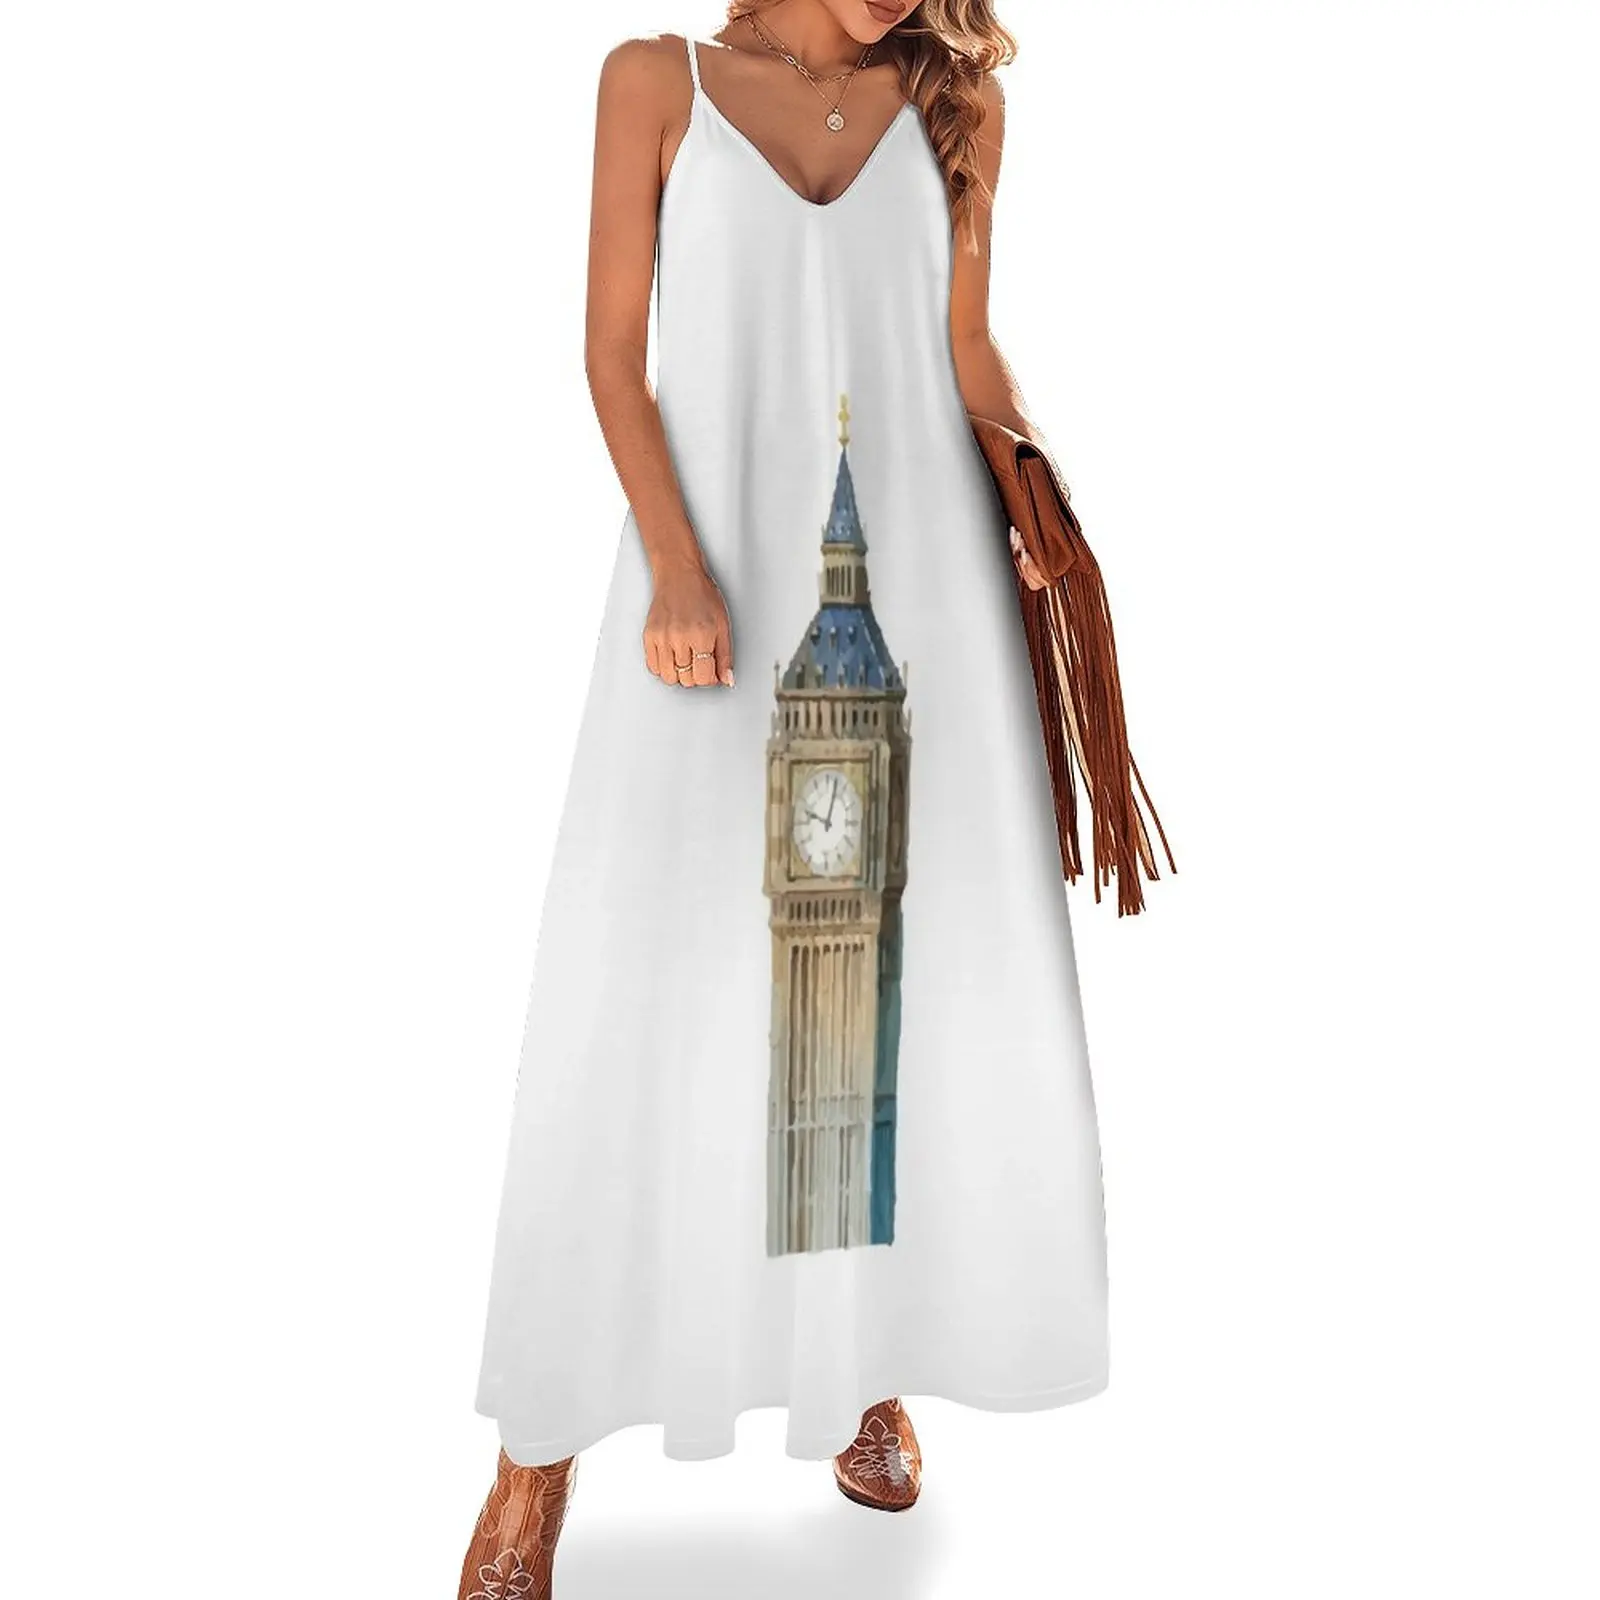 

Женское платье без рукавов Big Ben Tower-London, элегантное платье с длинным рукавом